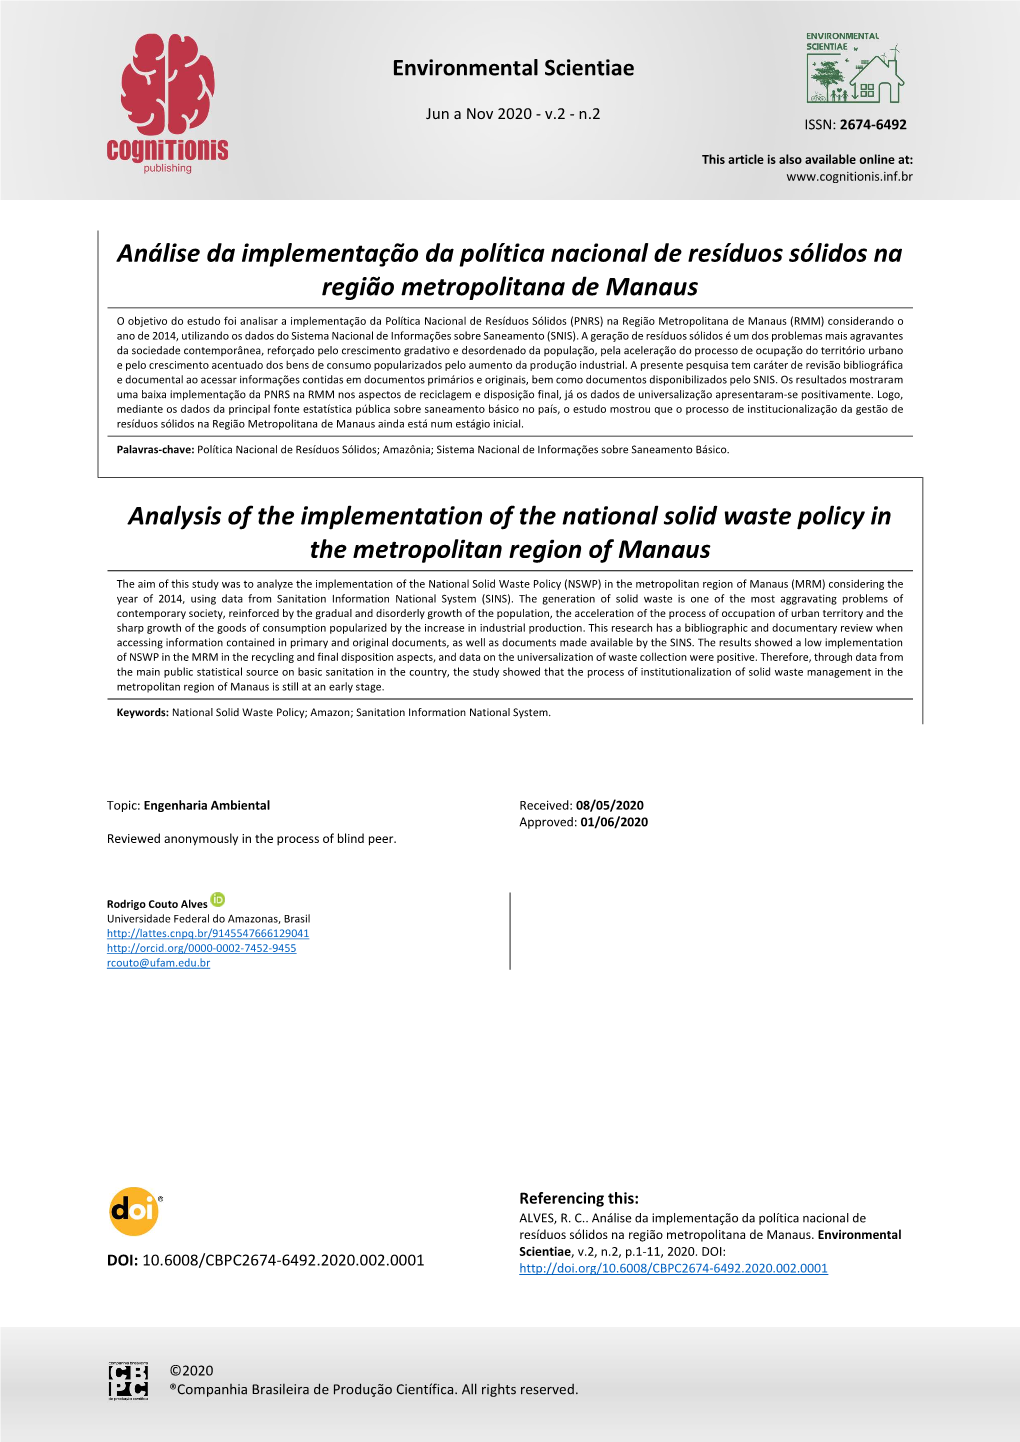 Análise Da Implementação Da Política Nacional De Resíduos Sólidos Na Região Metropolitana De Manaus